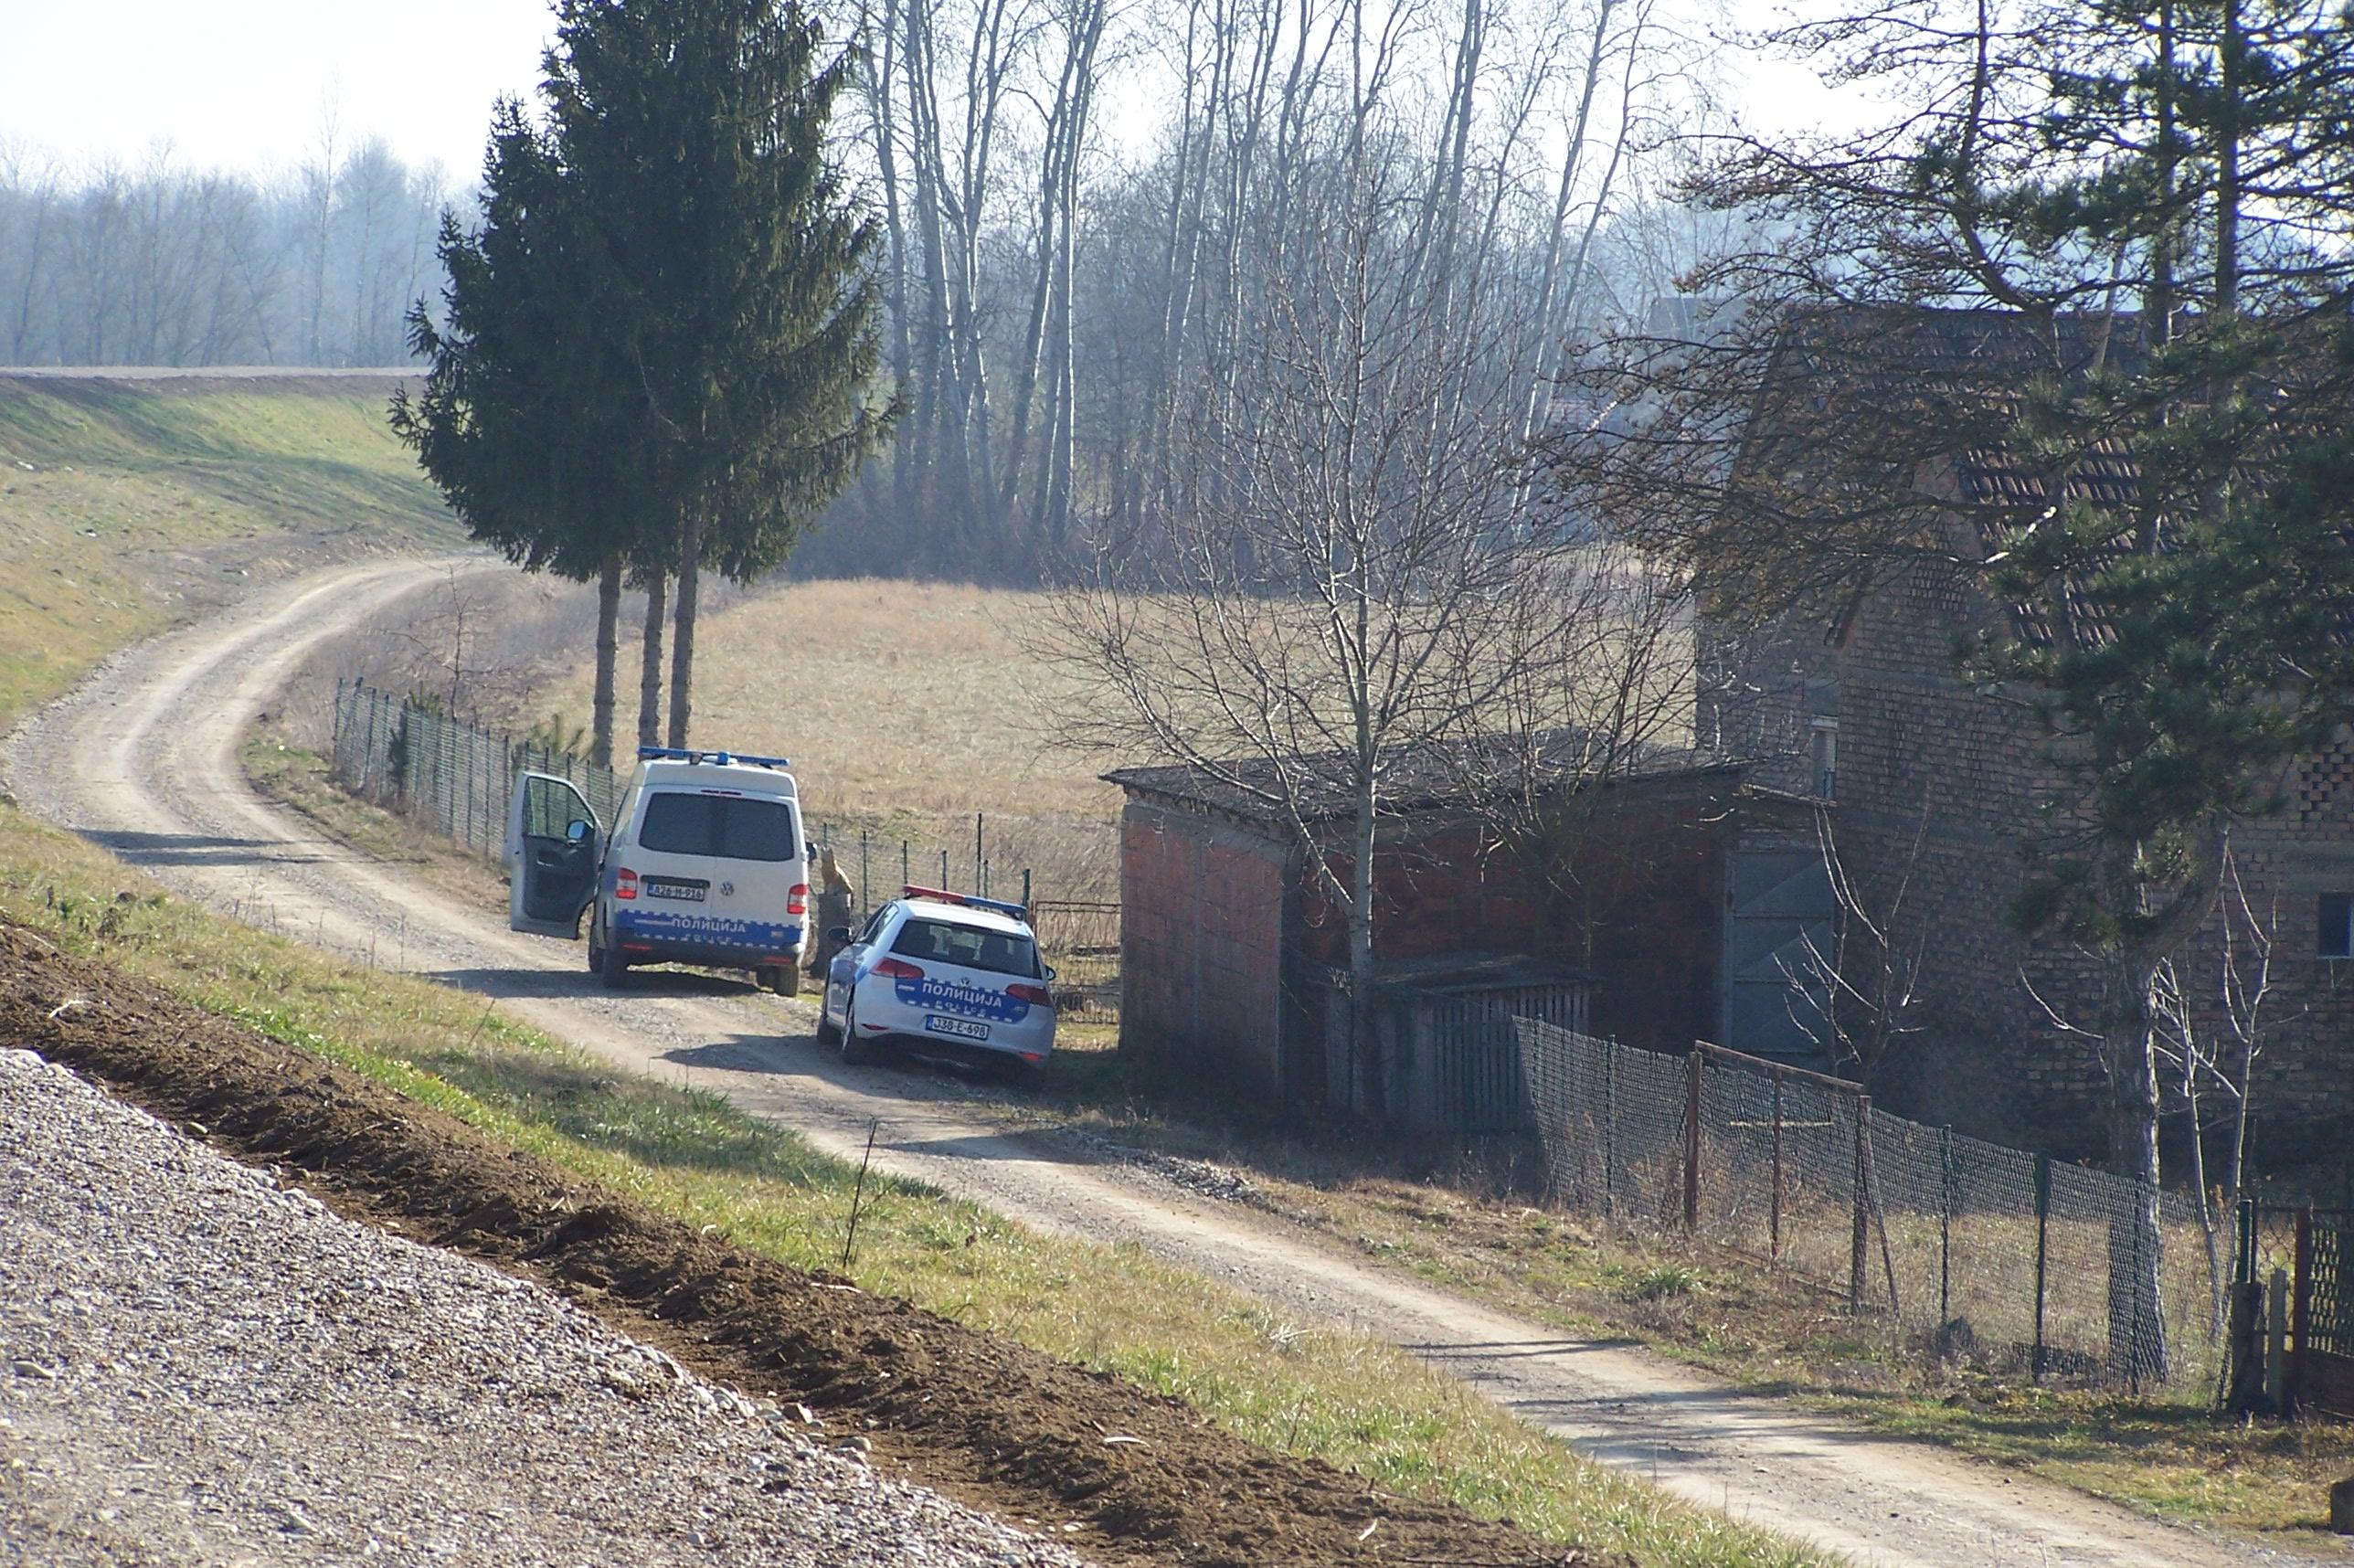 Kuća na granici sa Hrvatksom - Avaz